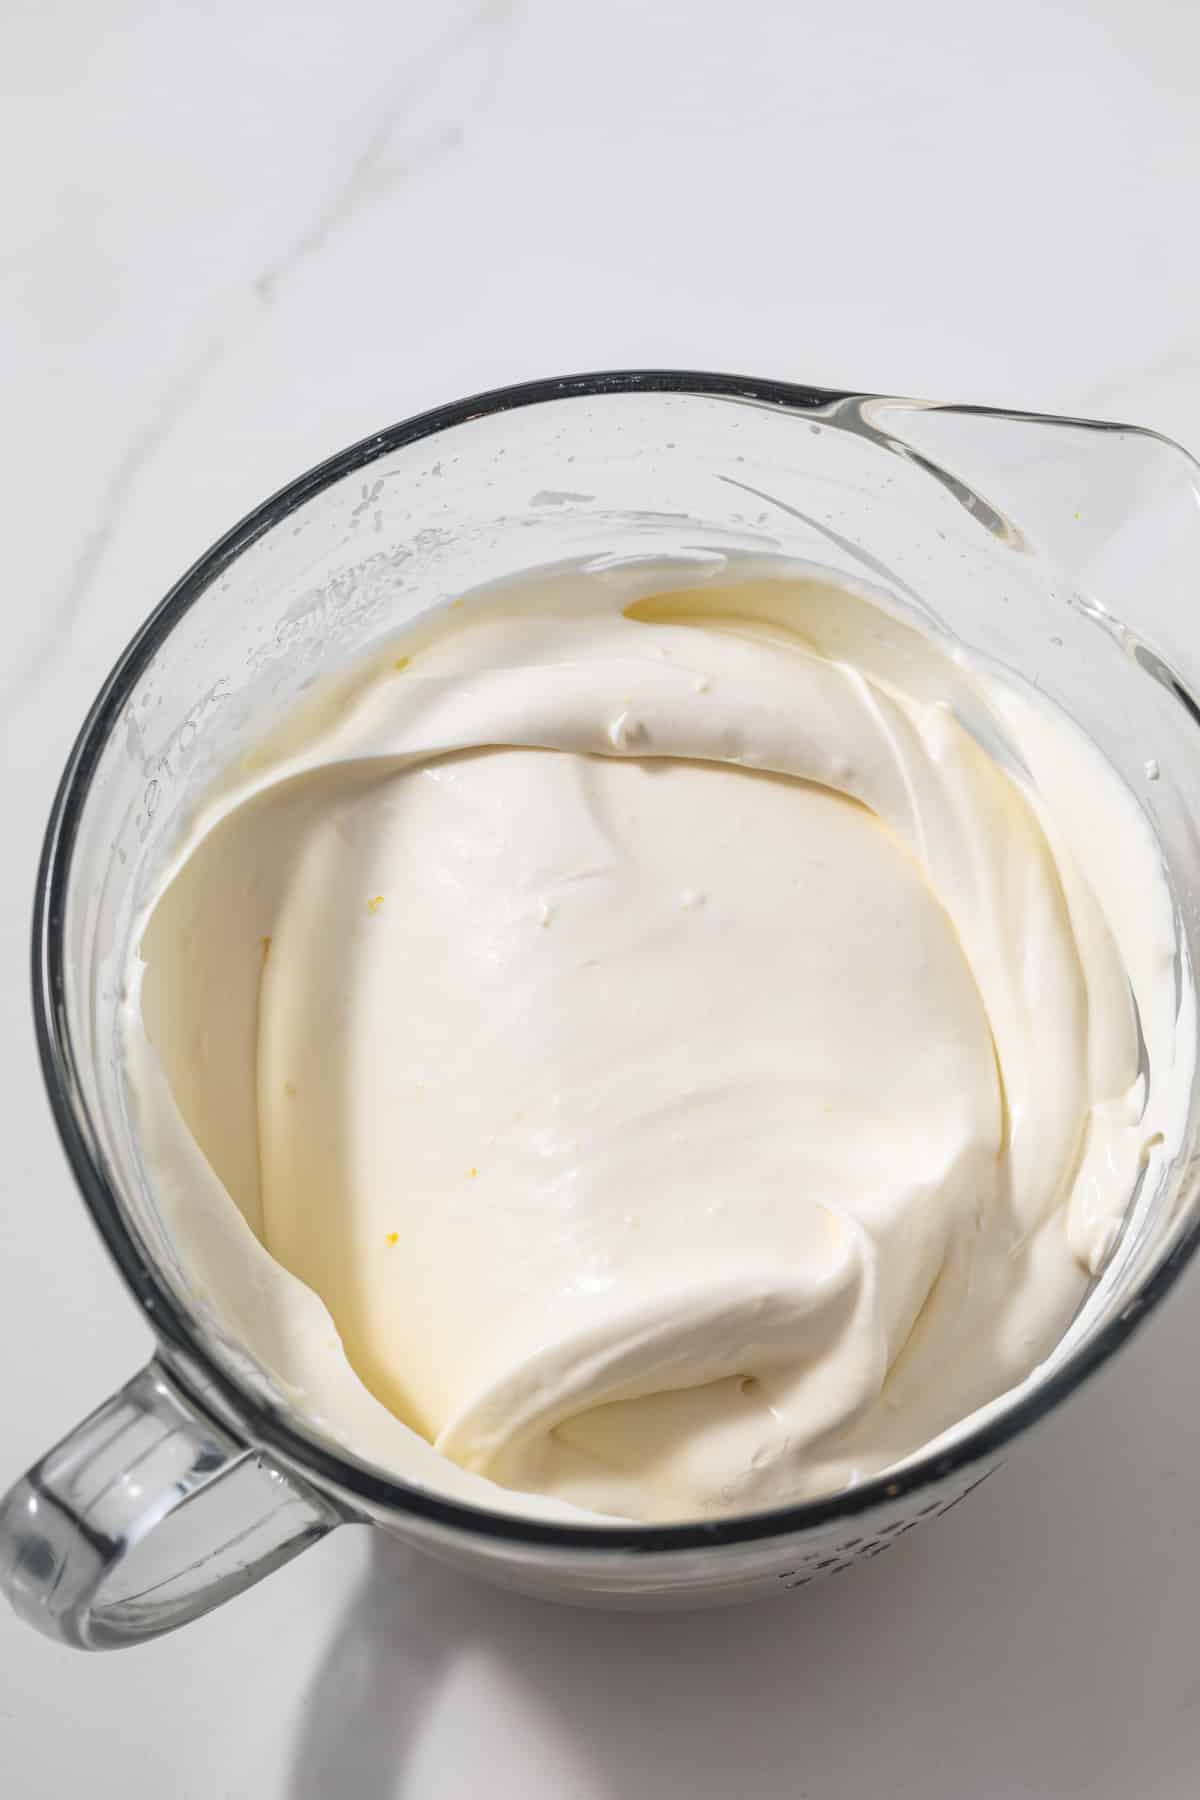 Lemon whipped cream in glass bowl.